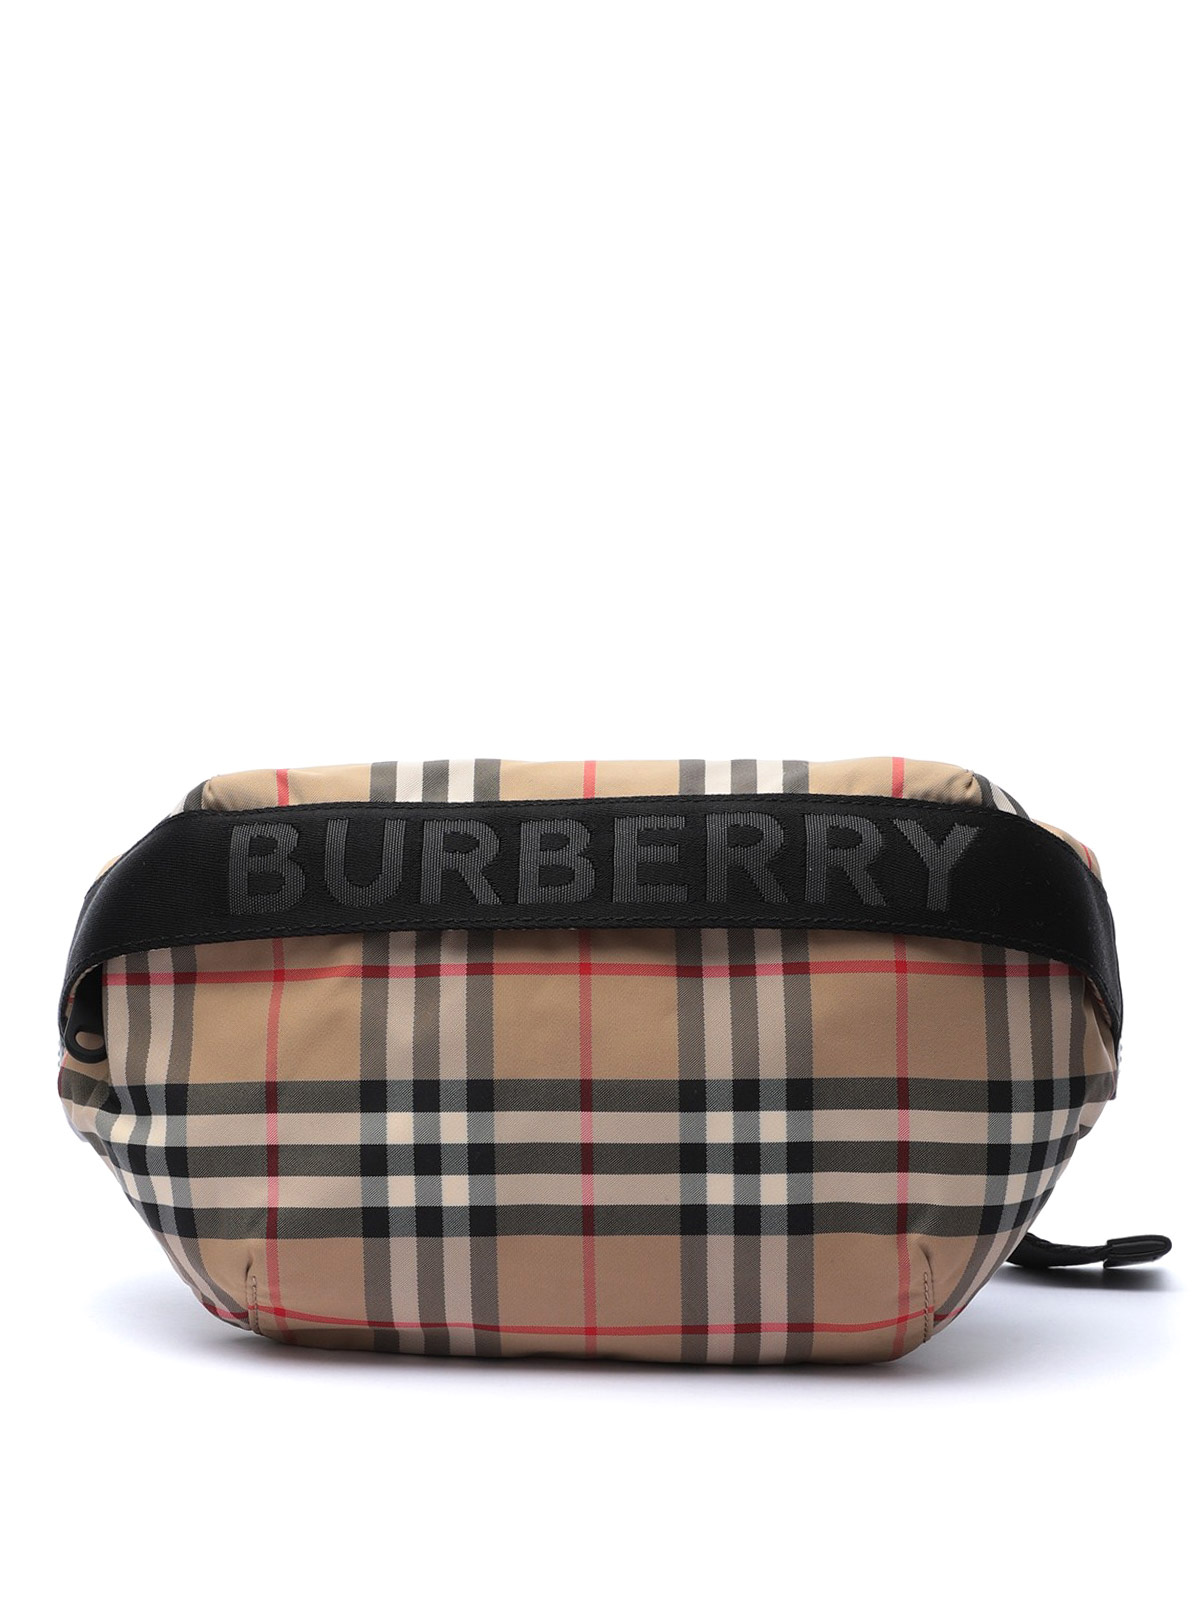 Sonny nylon check belt bag - Burberry - Men